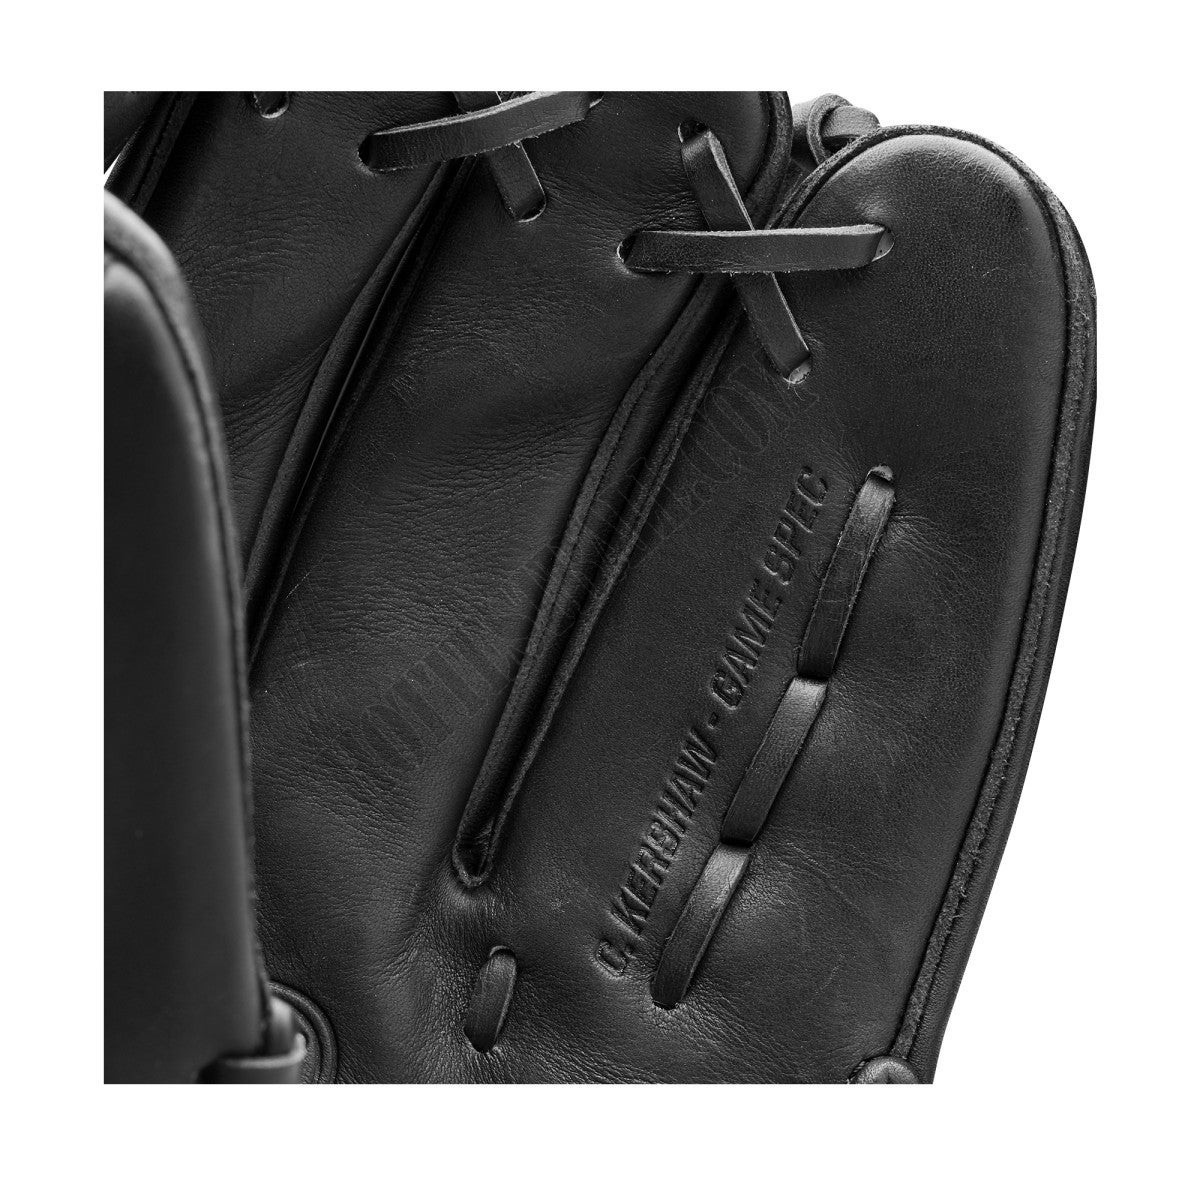 2021 A2000 CK22 GM 11.75" Pitcher's Baseball Glove ● Wilson Promotions - -8